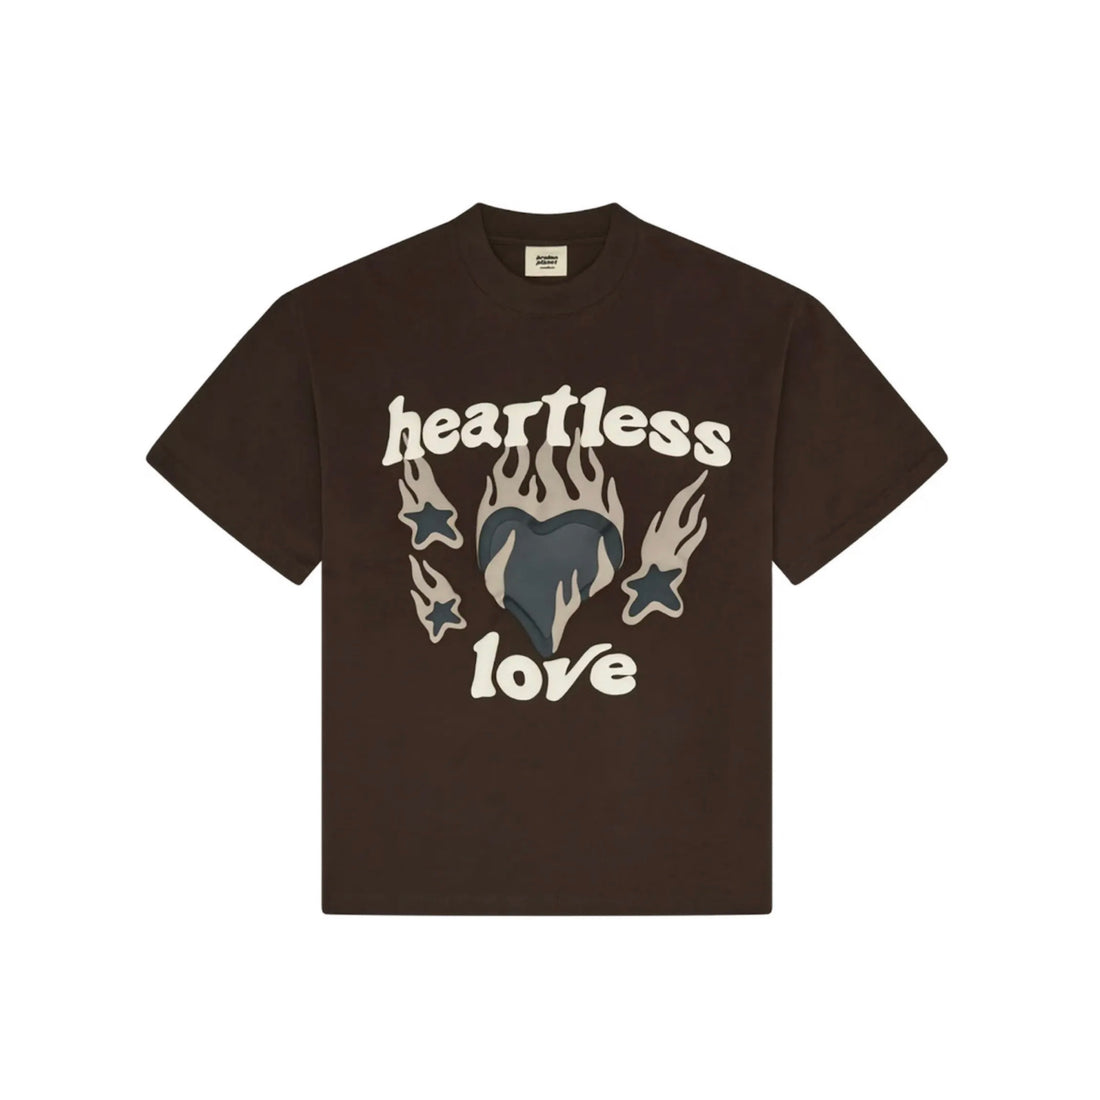 Broken Planet Market Heartless Love Mocha Brown T-Shirt